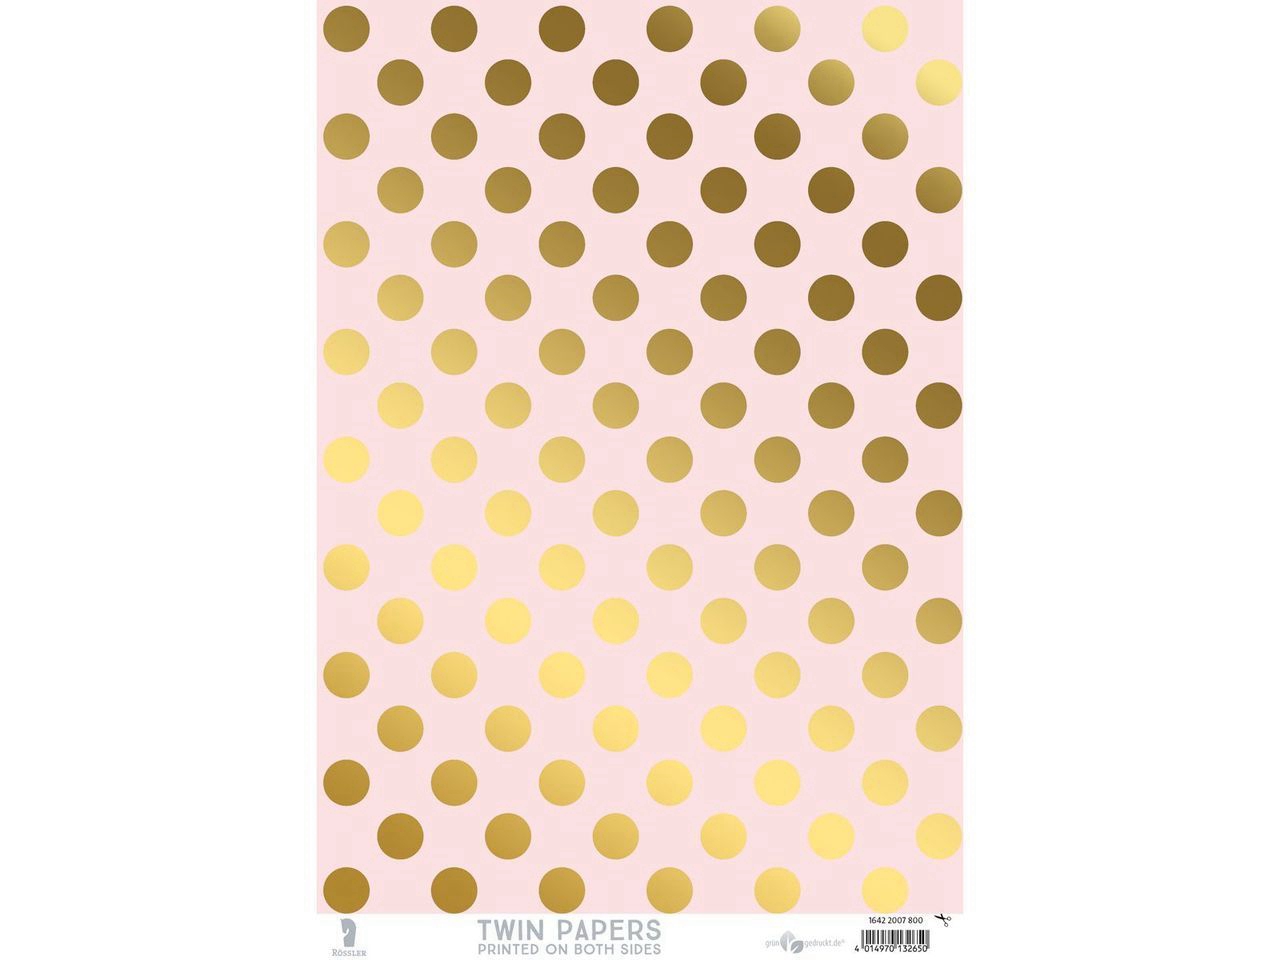 Fogli Twin papers, Punti dorati in lamina d'oro su apricot + Design Giardino